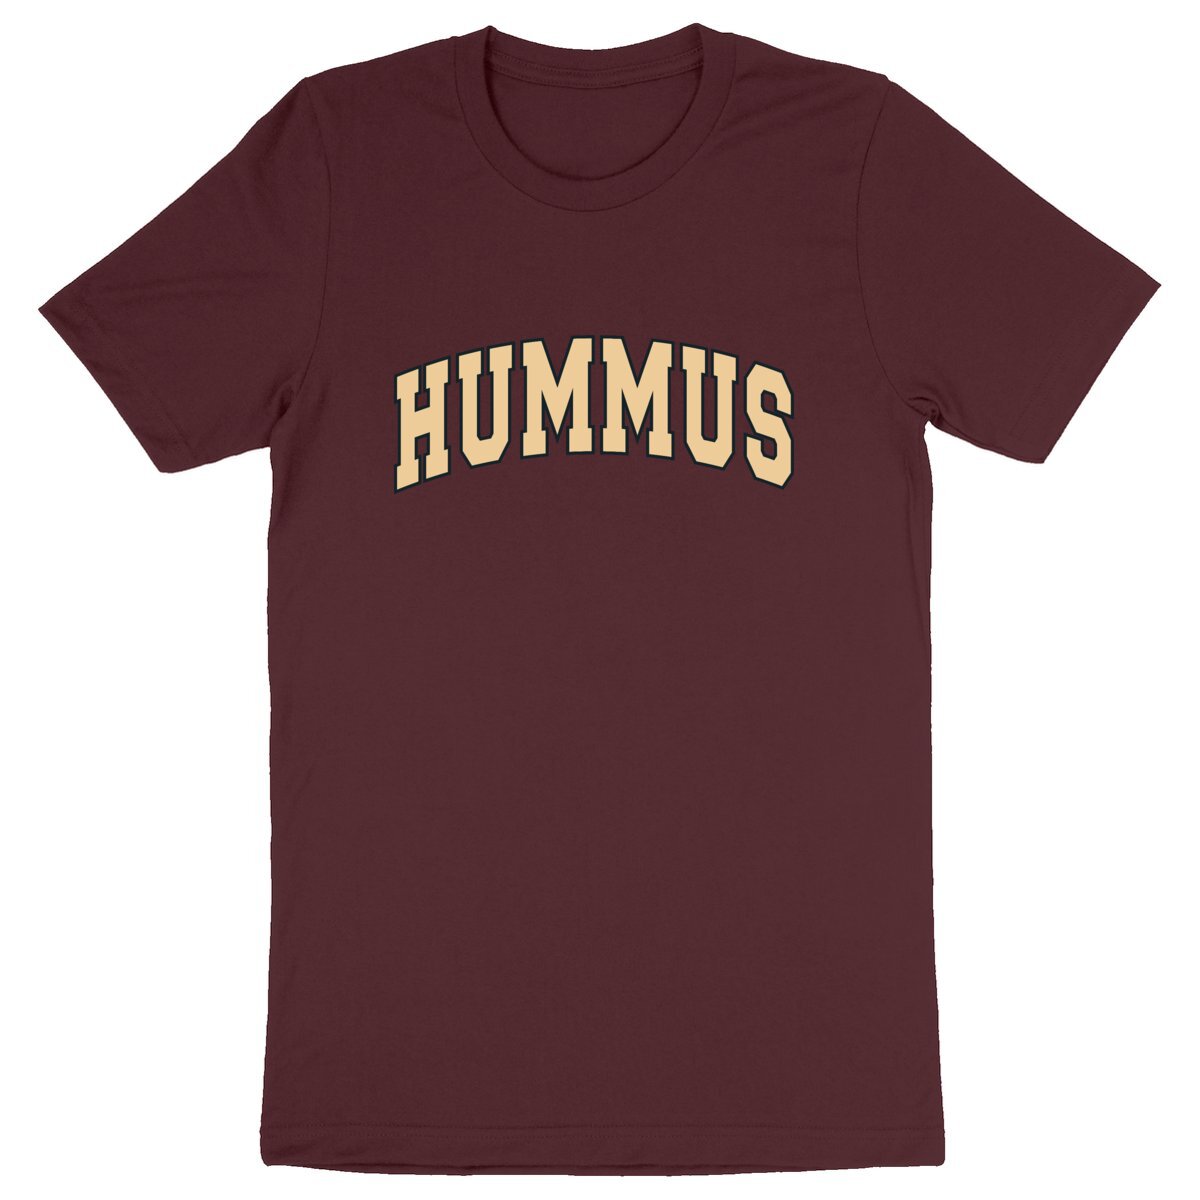 Hummus - Unisex Organic T-shirt